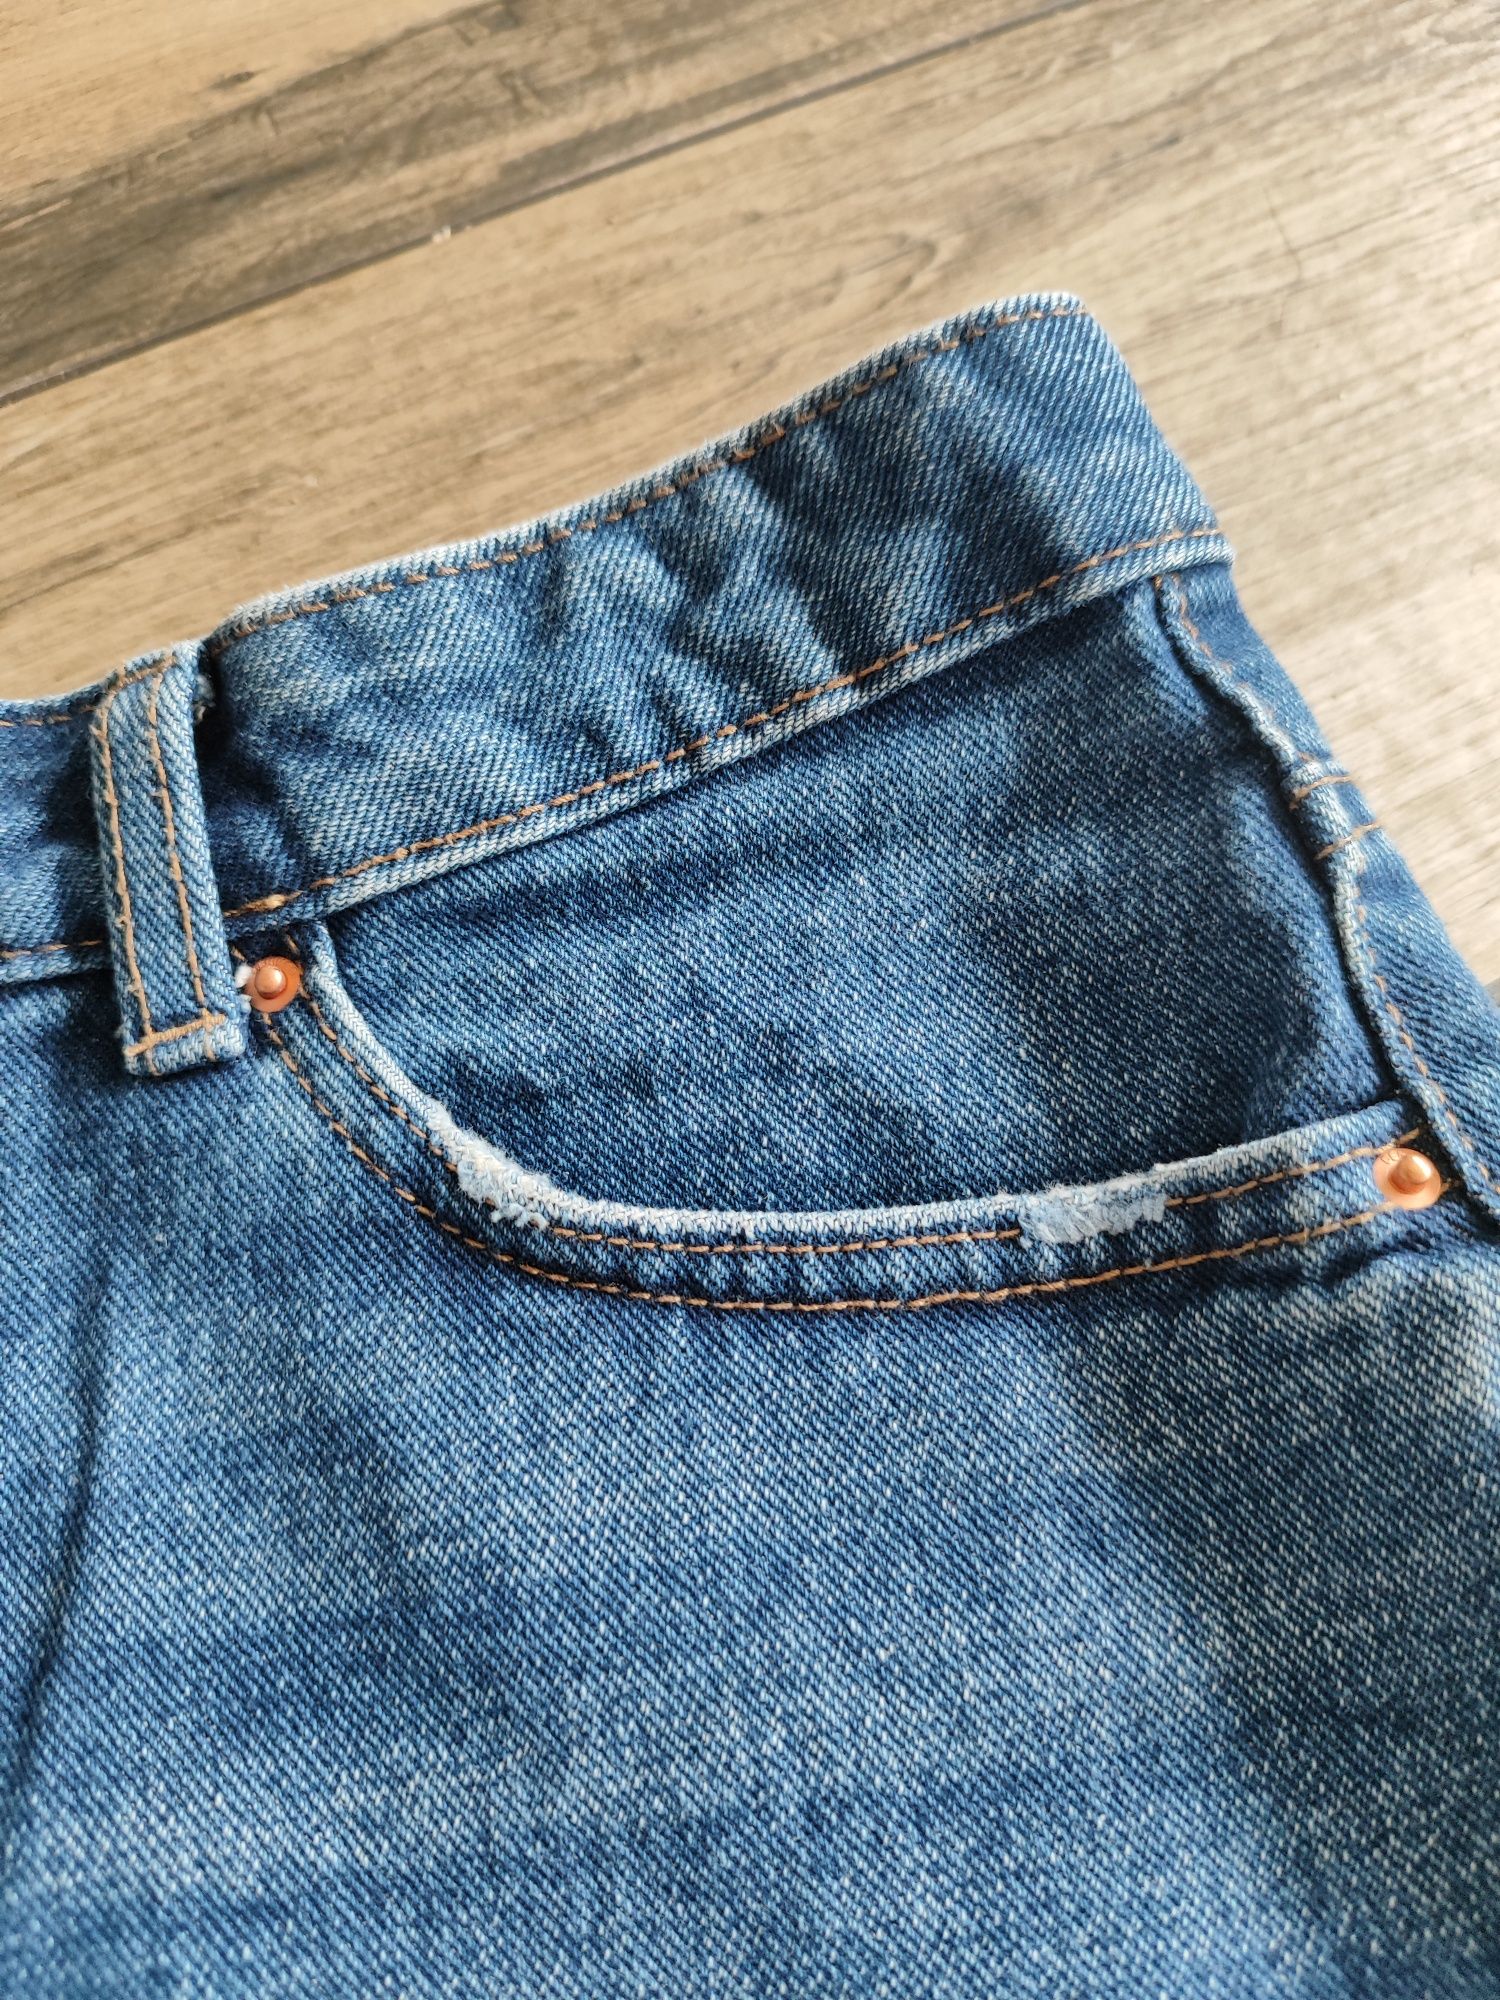 Spodenki szorty dżinsowe modne  jeansowe  wysoki stan granatowe nogawk